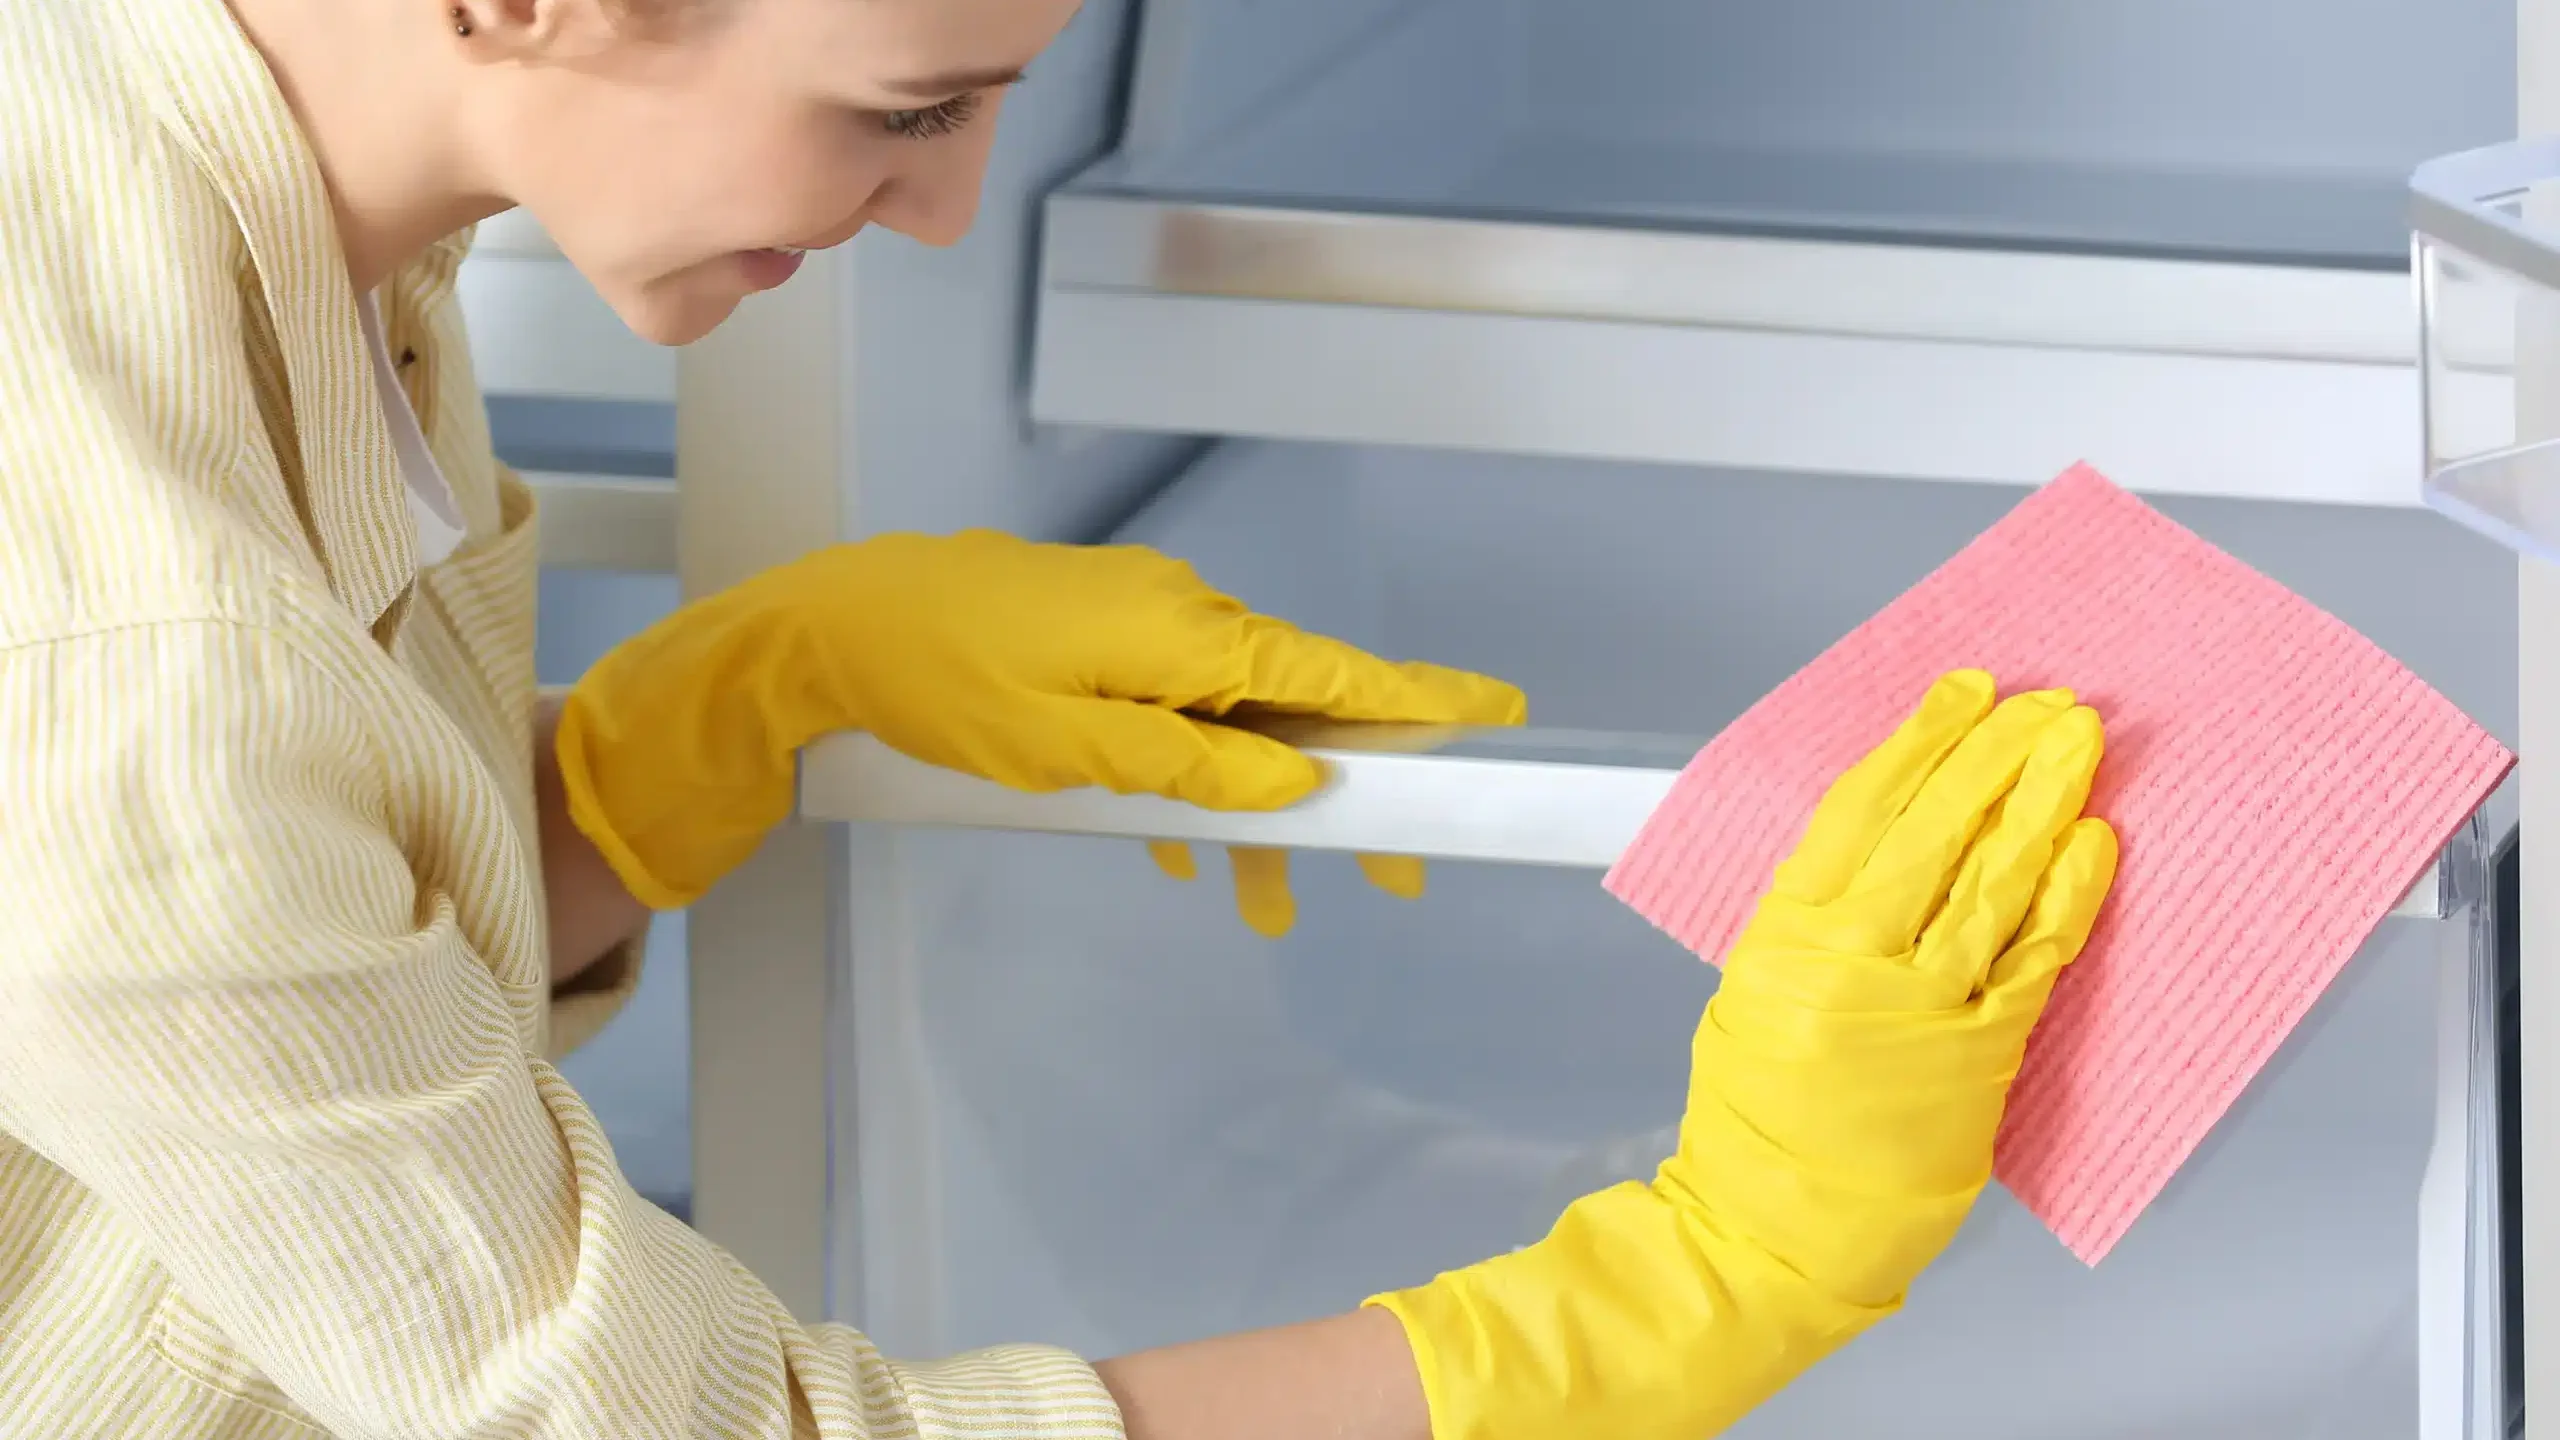 Kobieta czyści lodówkę ściereczką z domowym płynem do mycia lodówki